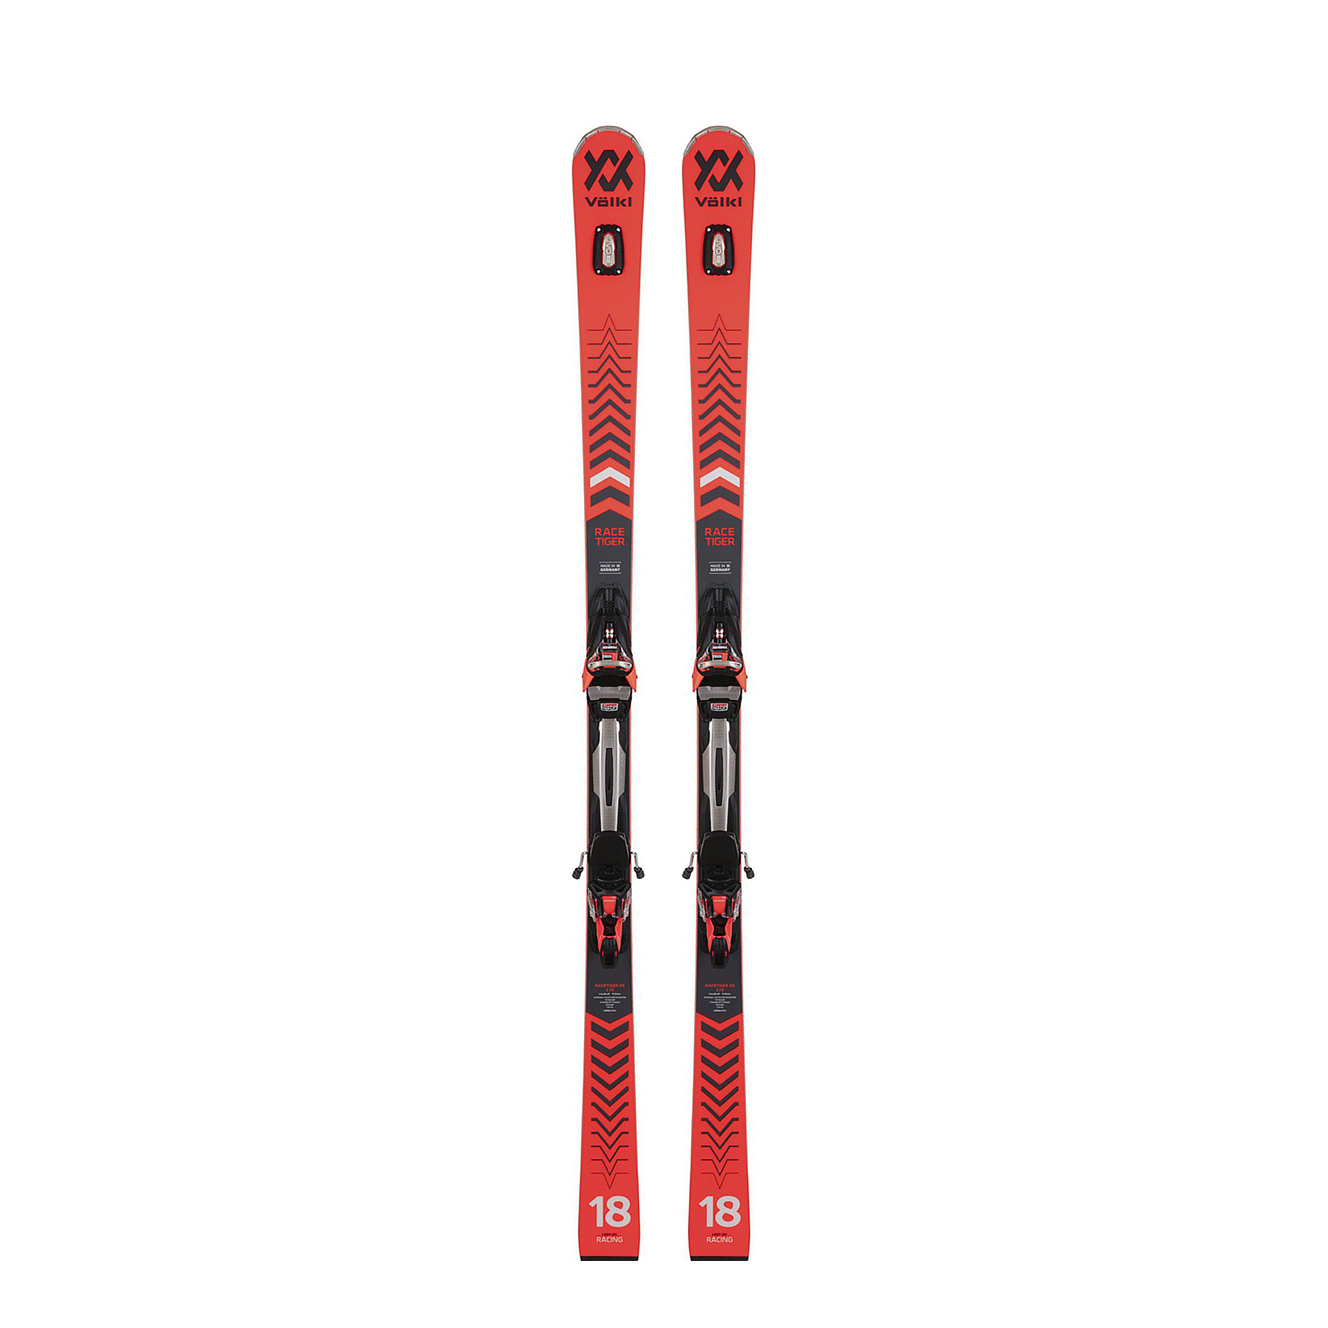 Горные лыжи Volkl Racetiger GS + rMotion2 12 GW 21/22 170